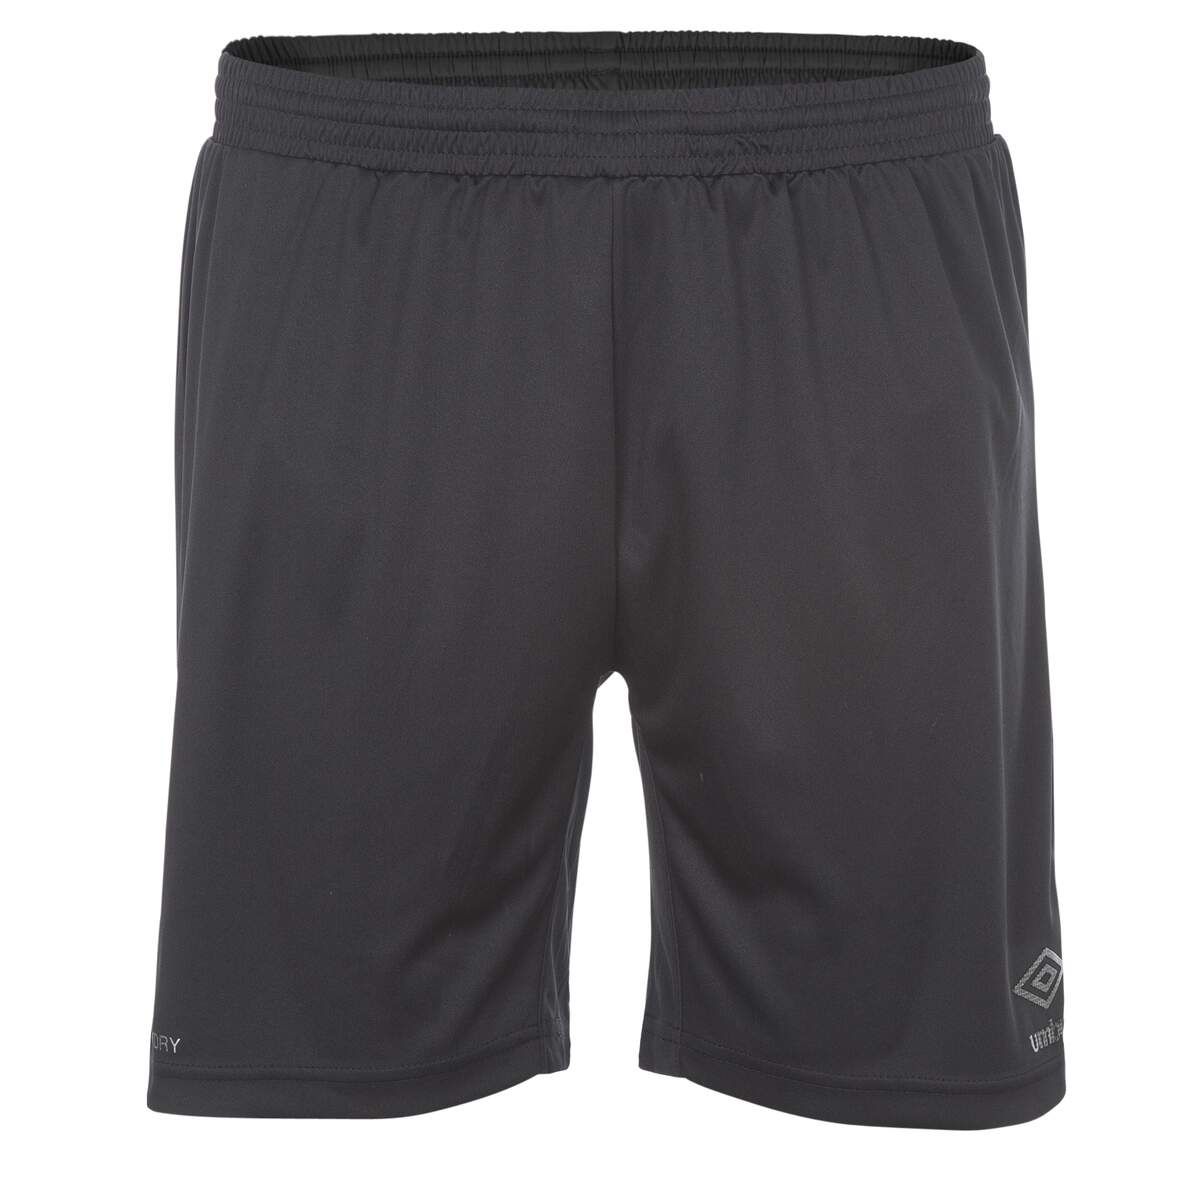 umbro-core-shorts-jr-black